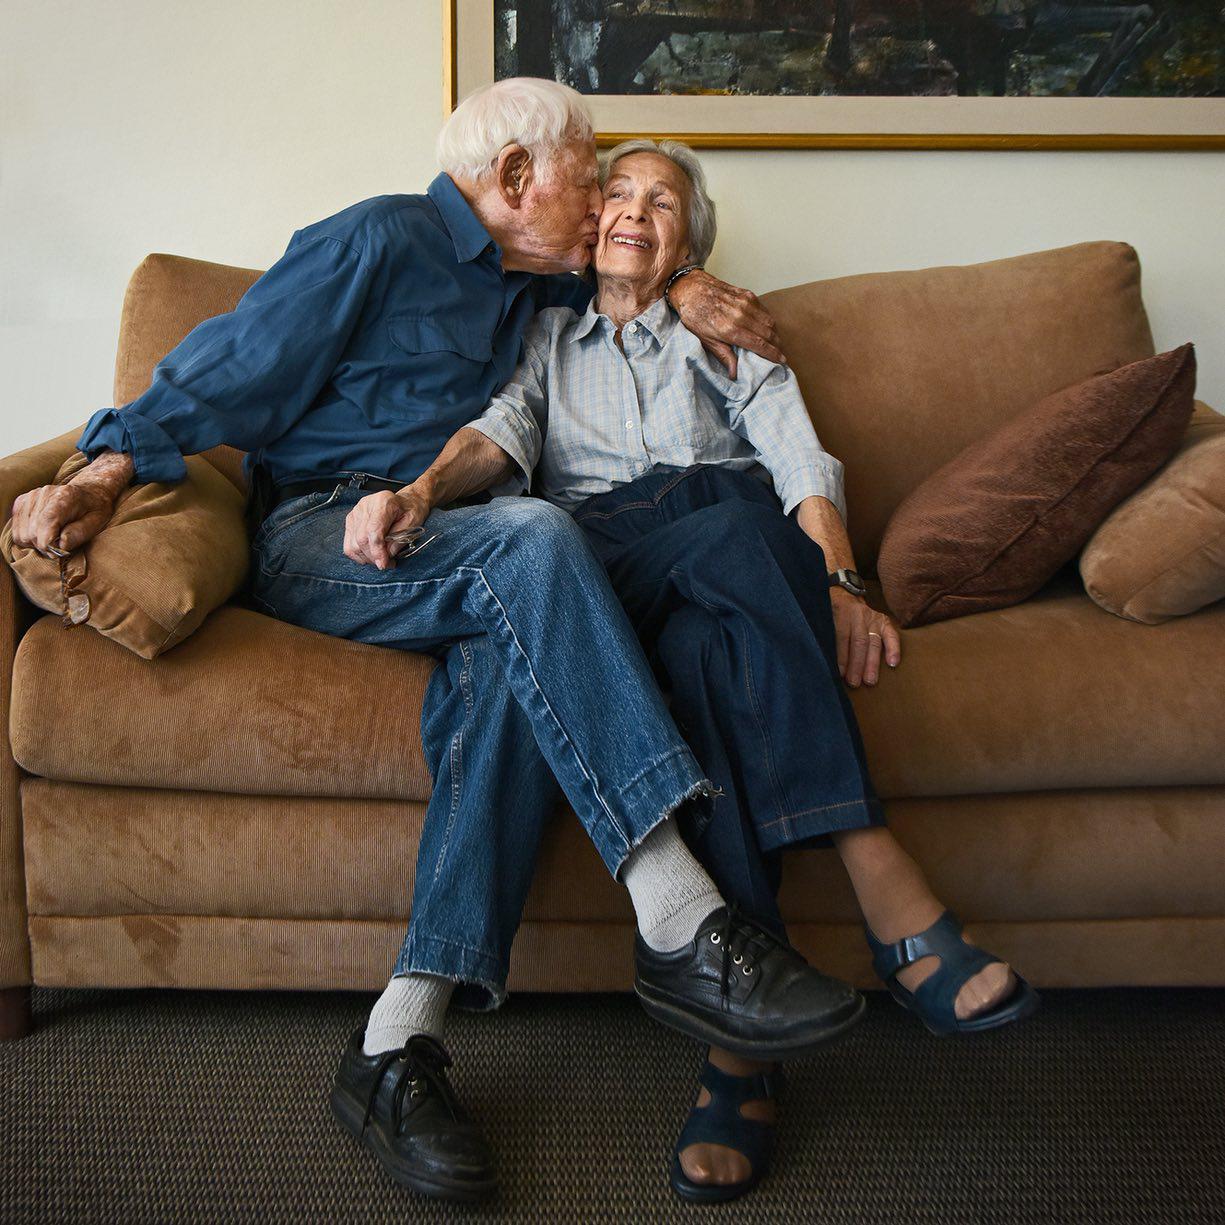 Bir əsr "sevirəm" demədən sevmək - 103 və 100 yaşlı iki sevgili - VİDEO - FOTO